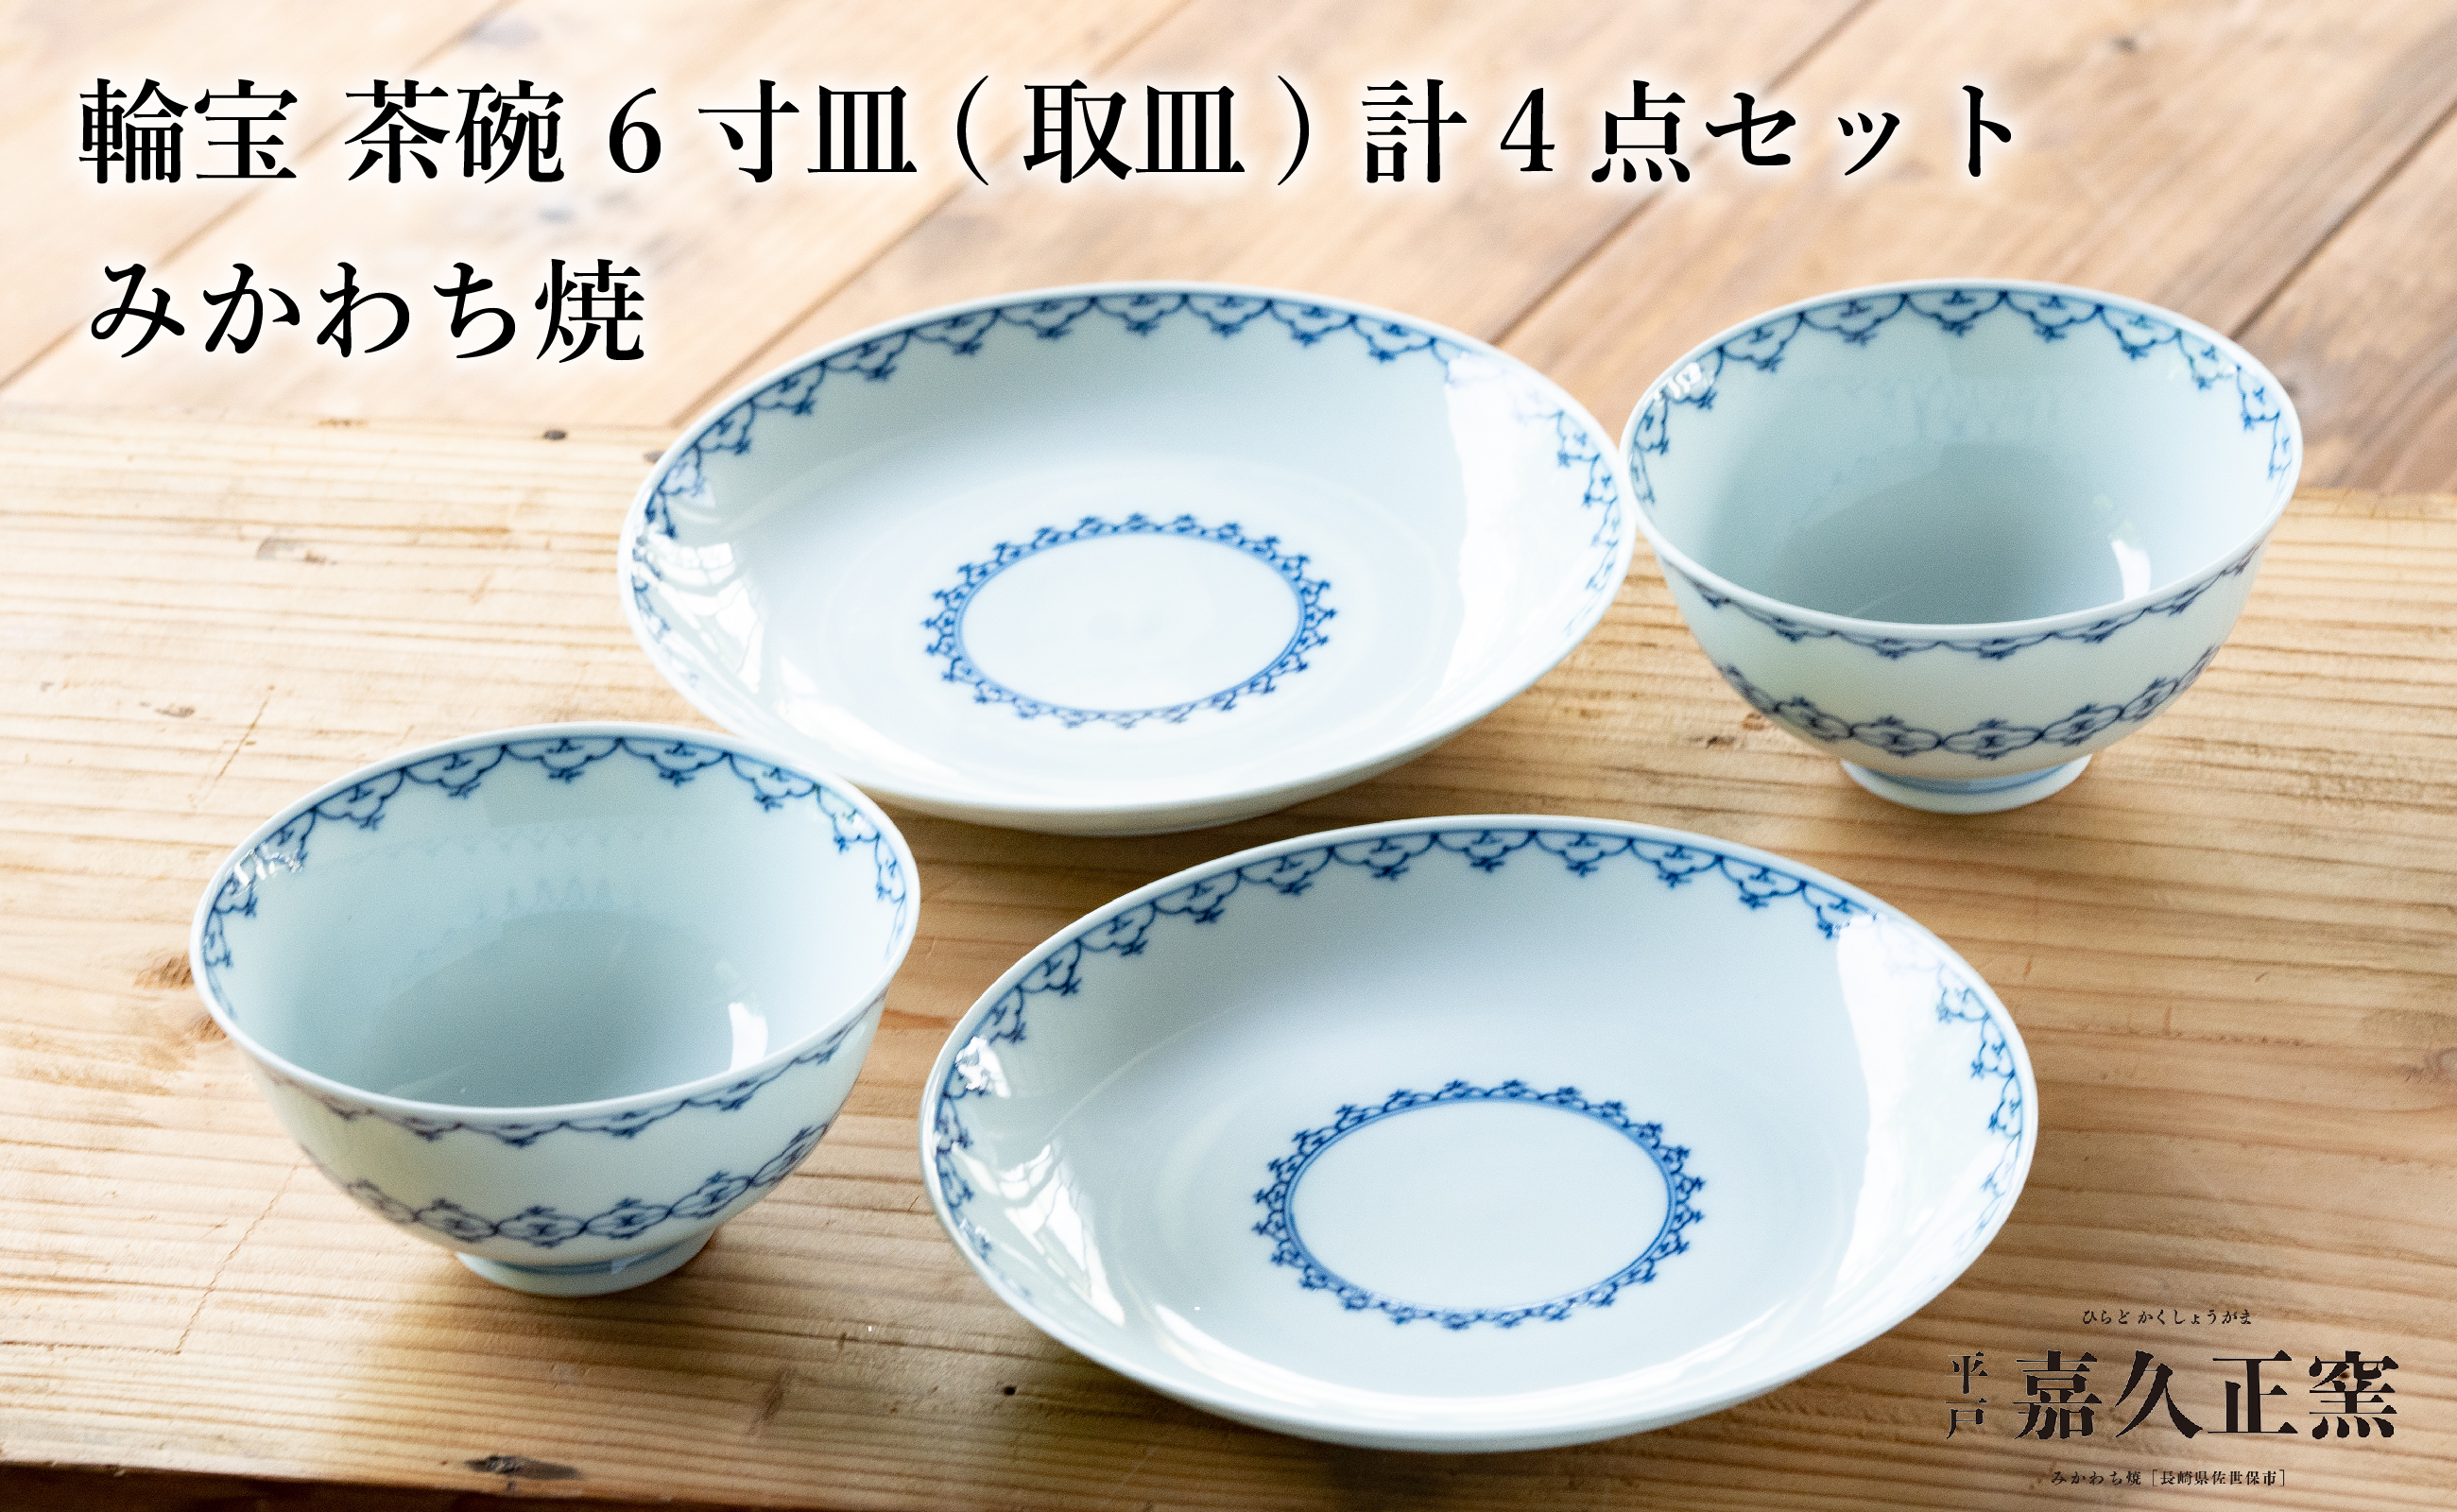 〈嘉久正窯〉輪宝 茶碗 6寸皿 計4点セット  手描き 染付  飯碗 茶碗 ケーキ皿 パン皿 盛り皿 食器 皿